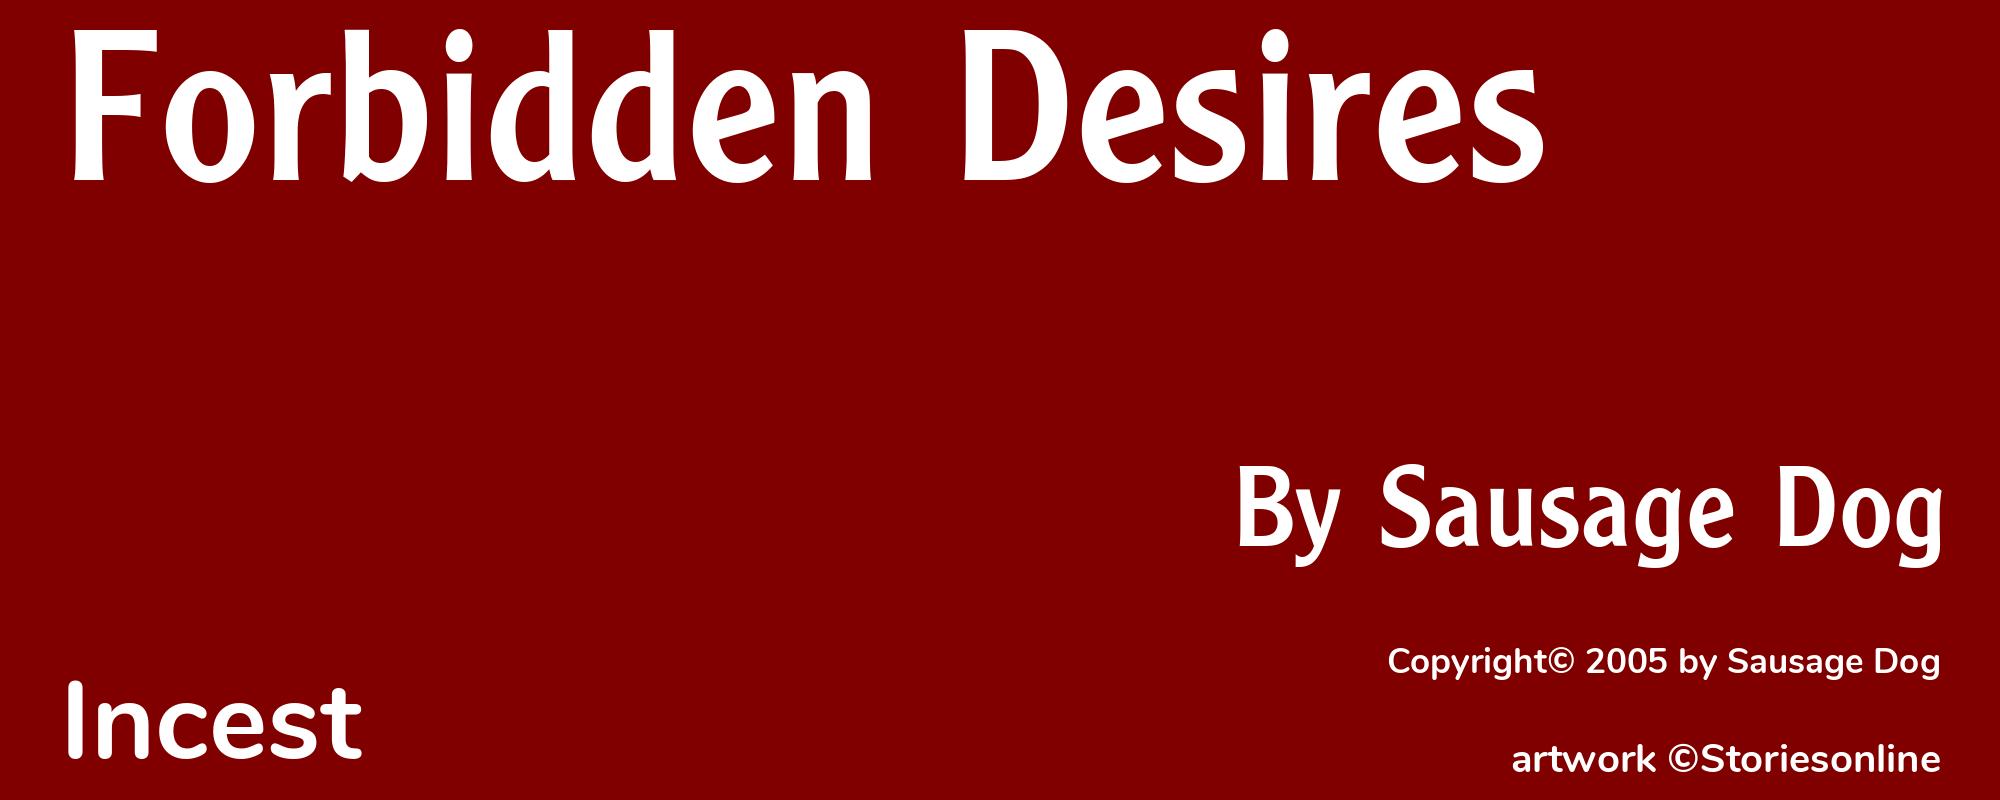 Forbidden Desires - Cover